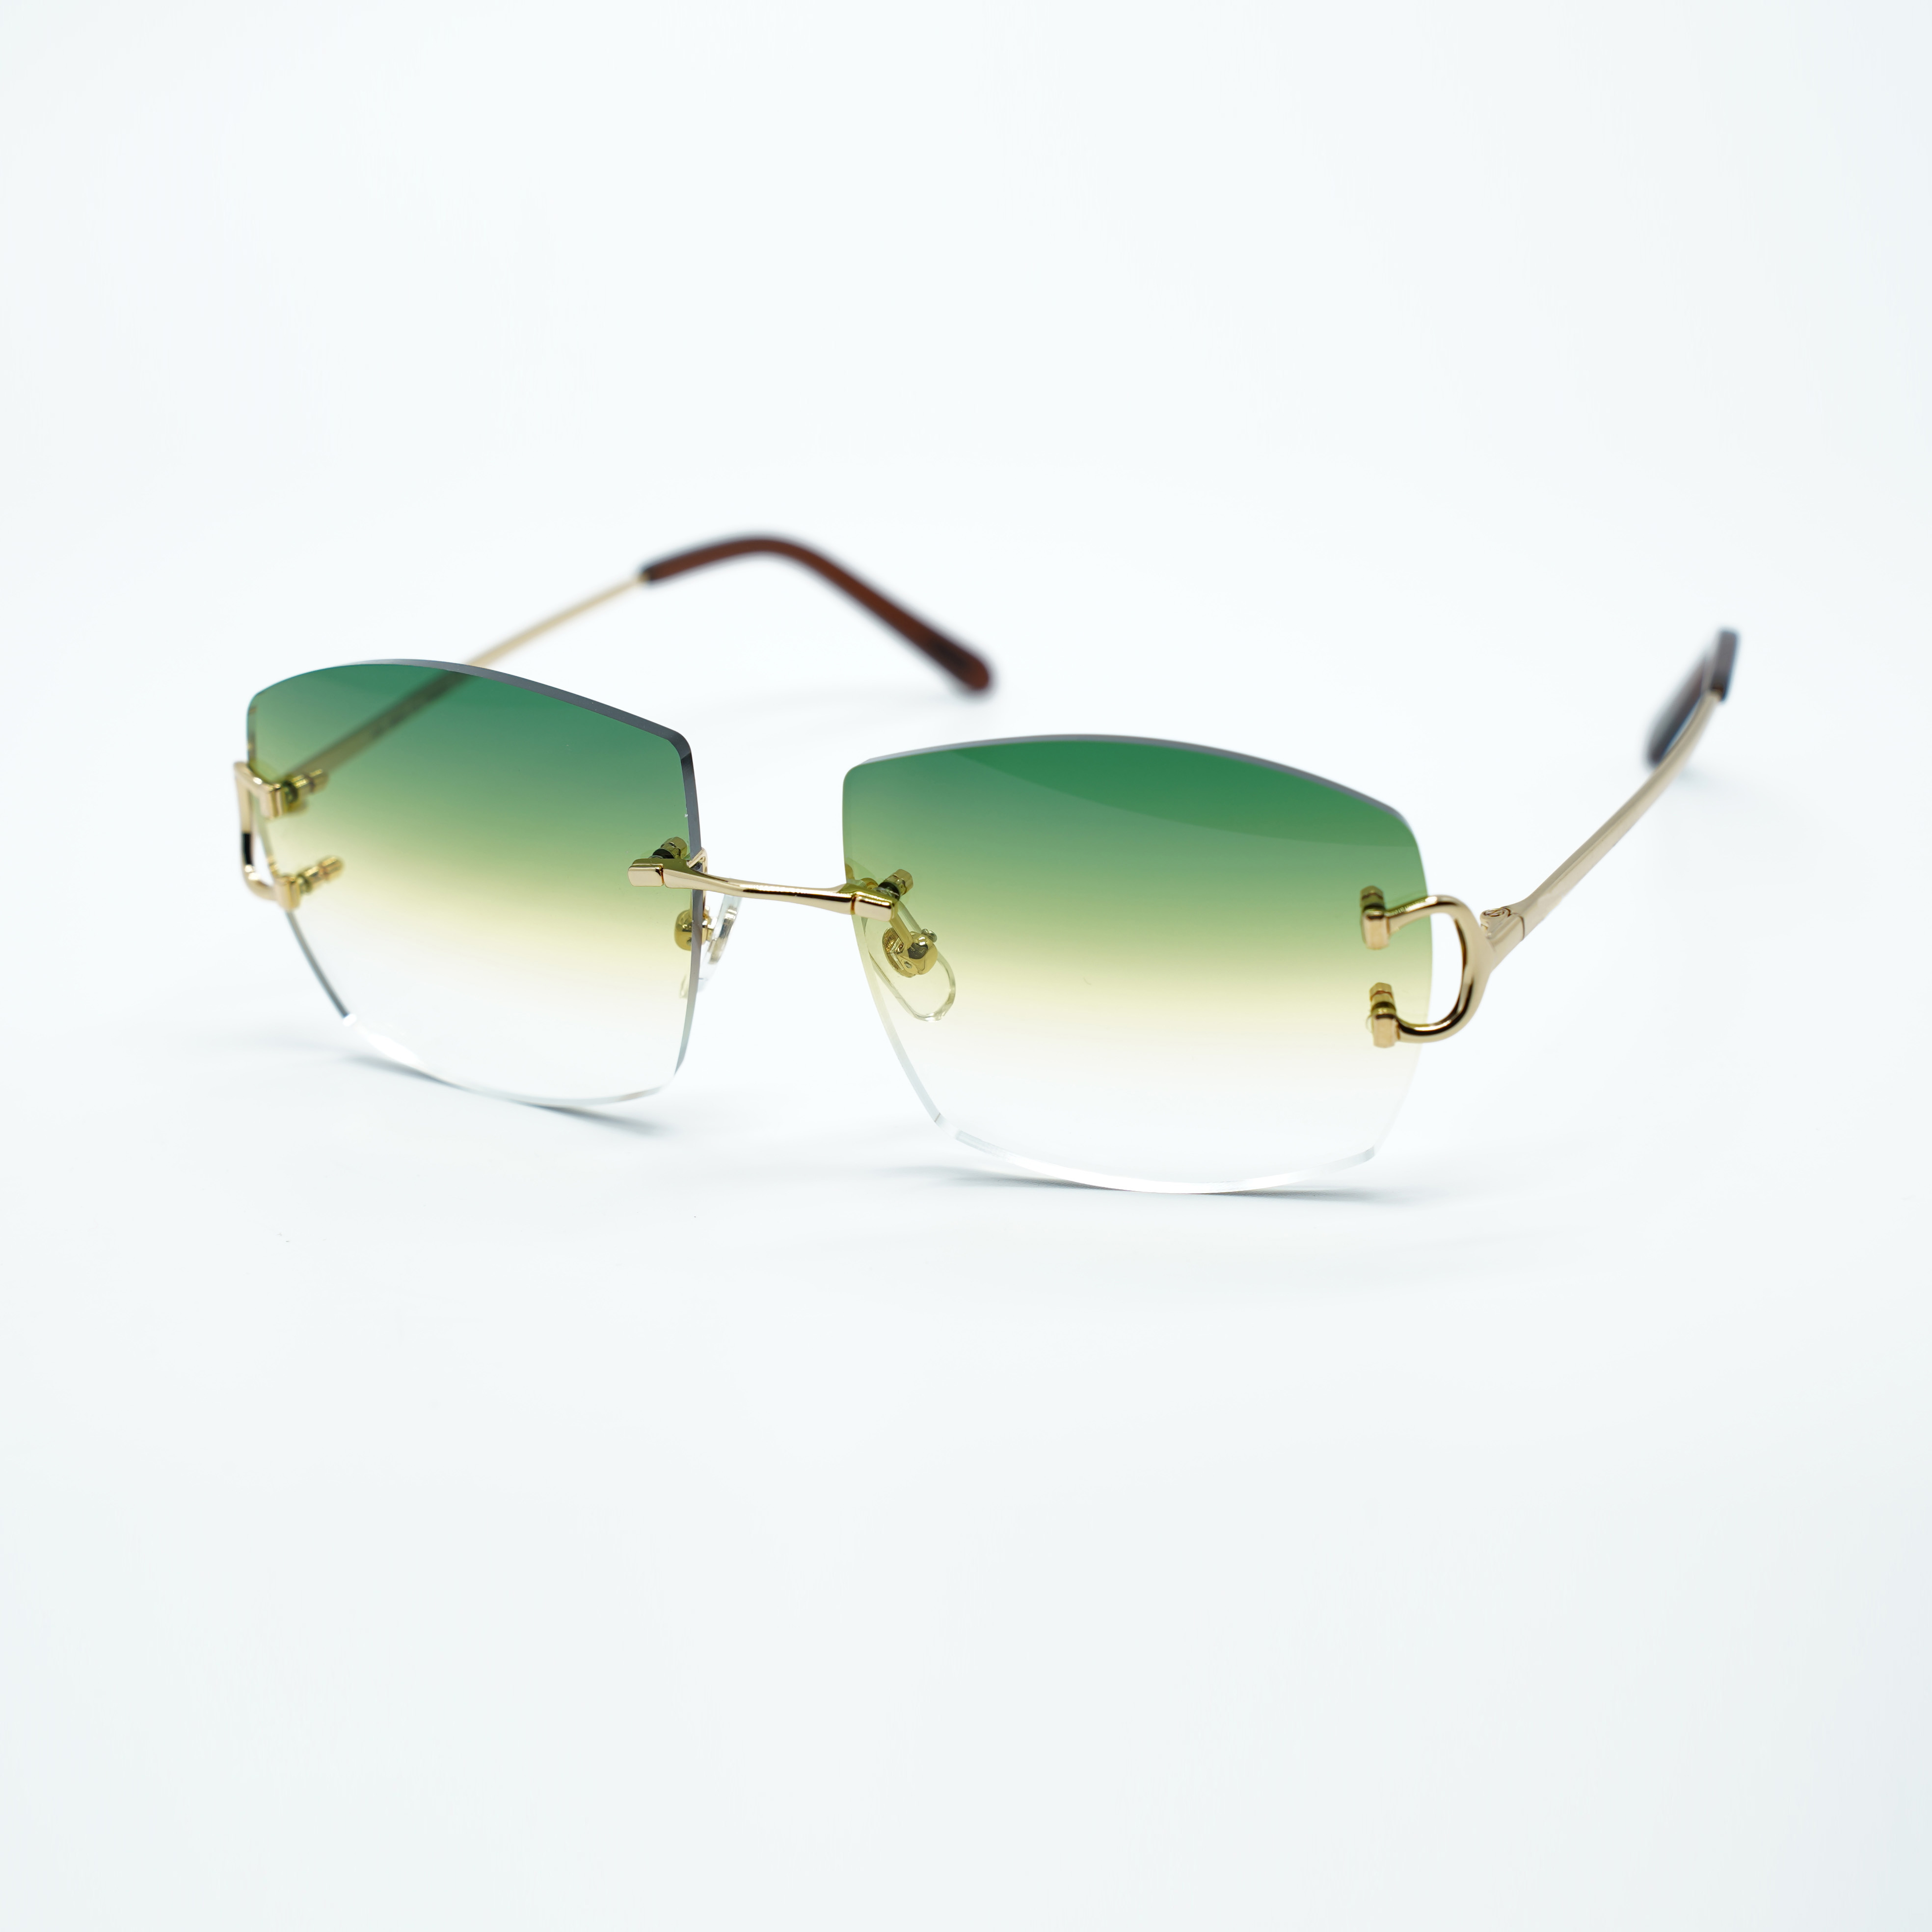 Sonnenbrille aus Metallkrallendraht A4189706 mit 60-mm-Glas und 3,0 mm Dicke3178